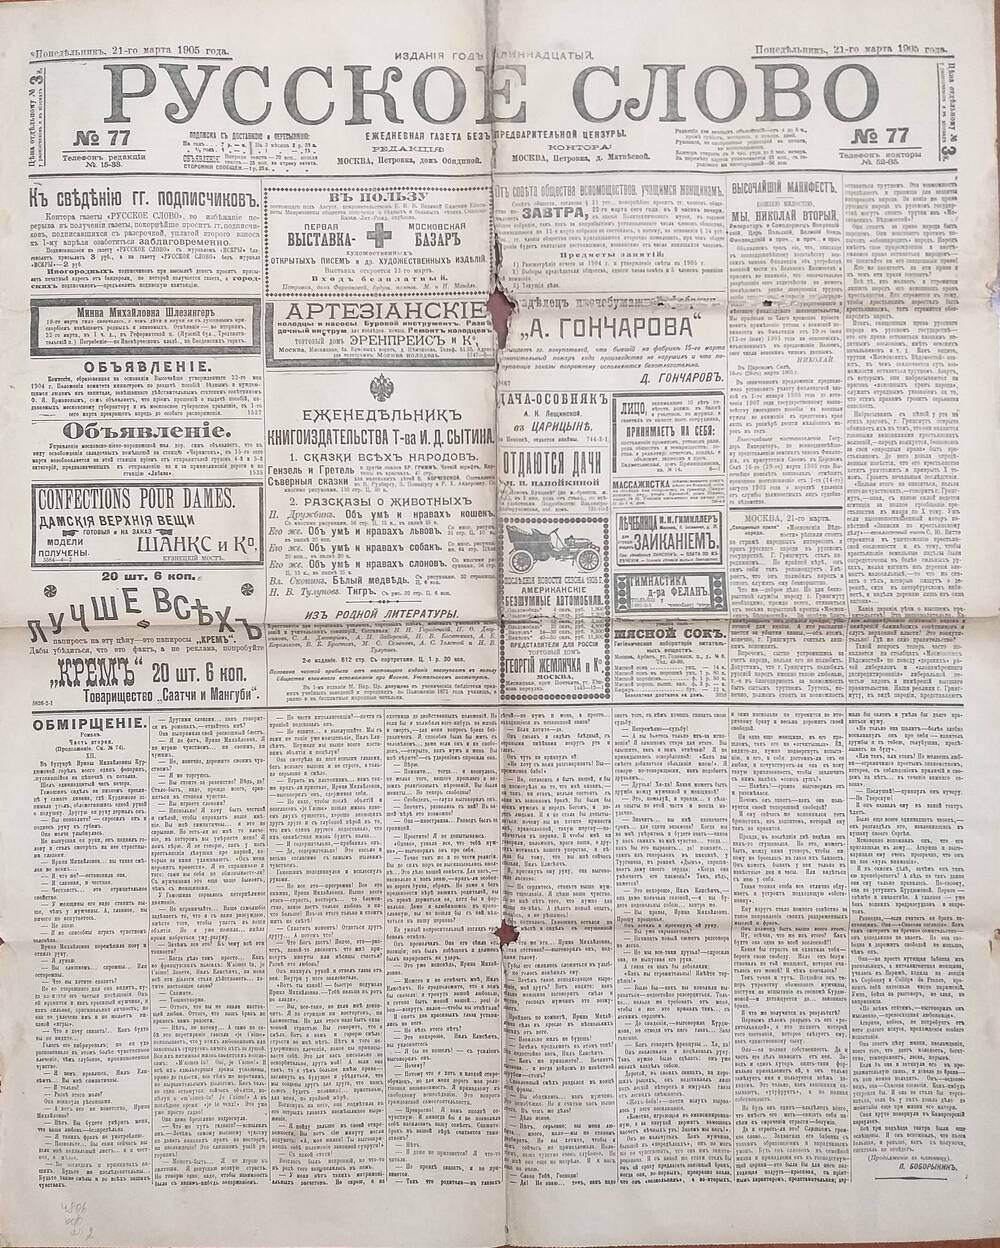 Газета Русское слово № 77 от 21.03.1905 года.